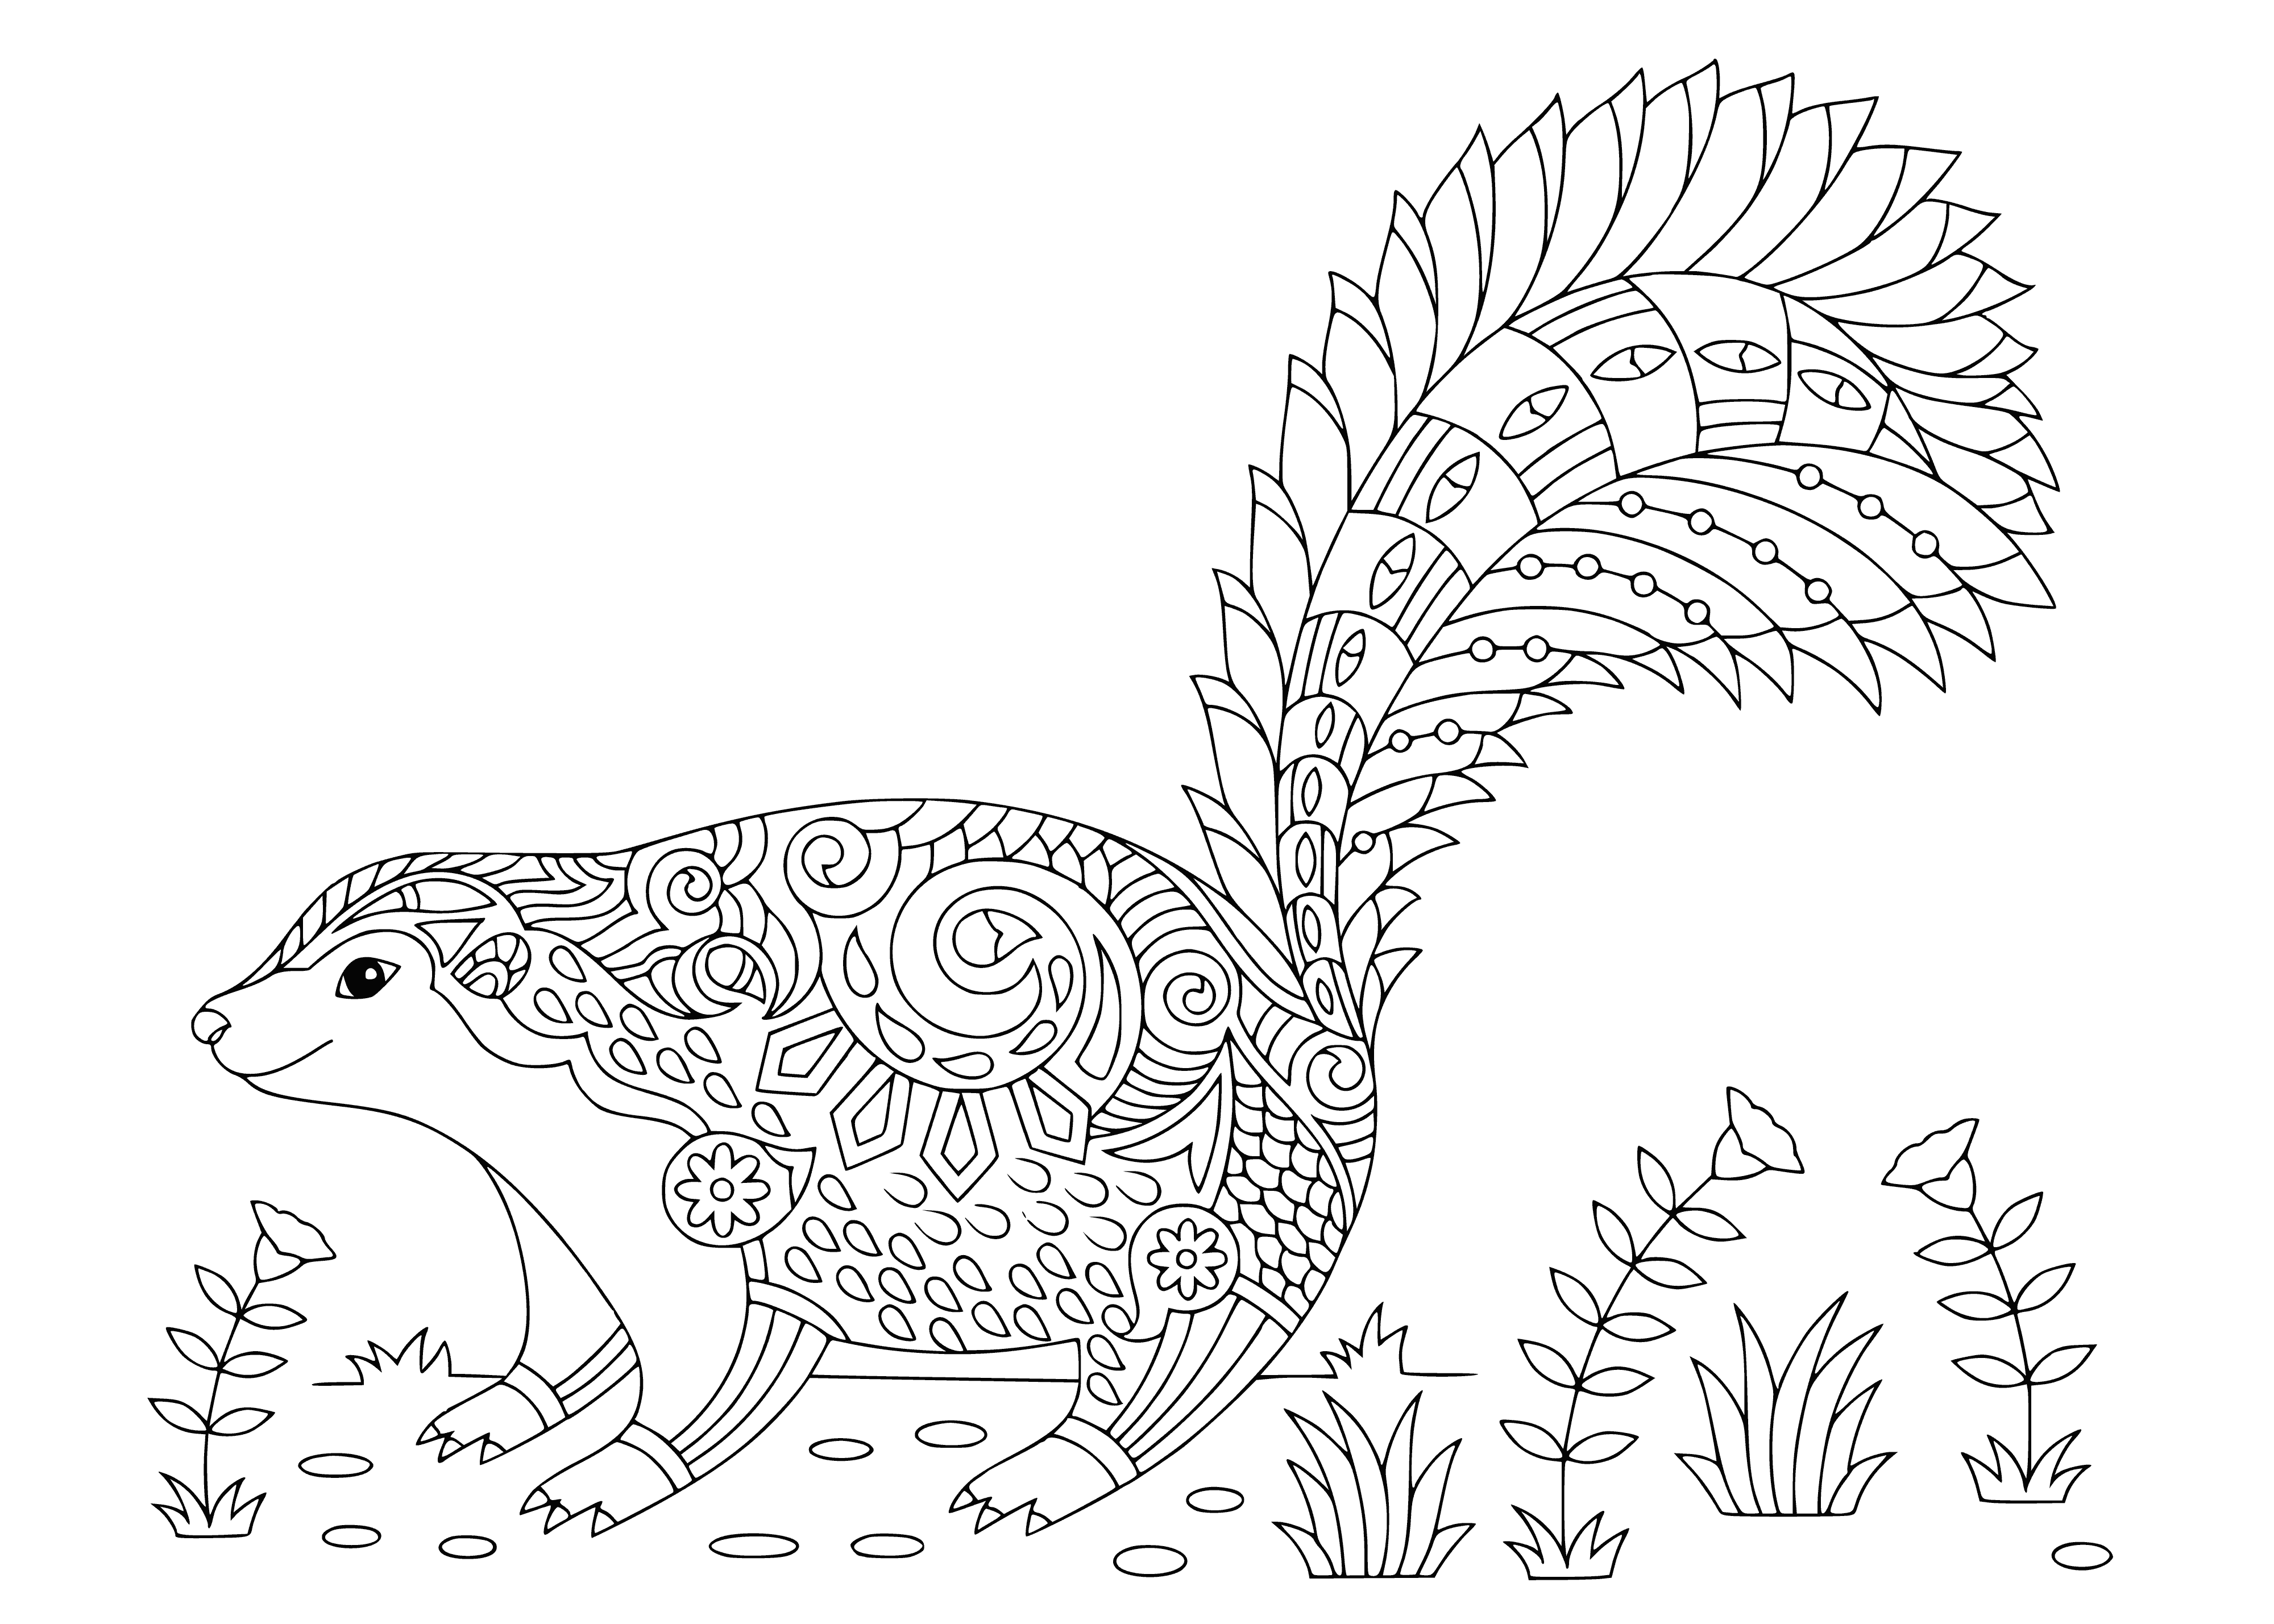 Skunk coloring page